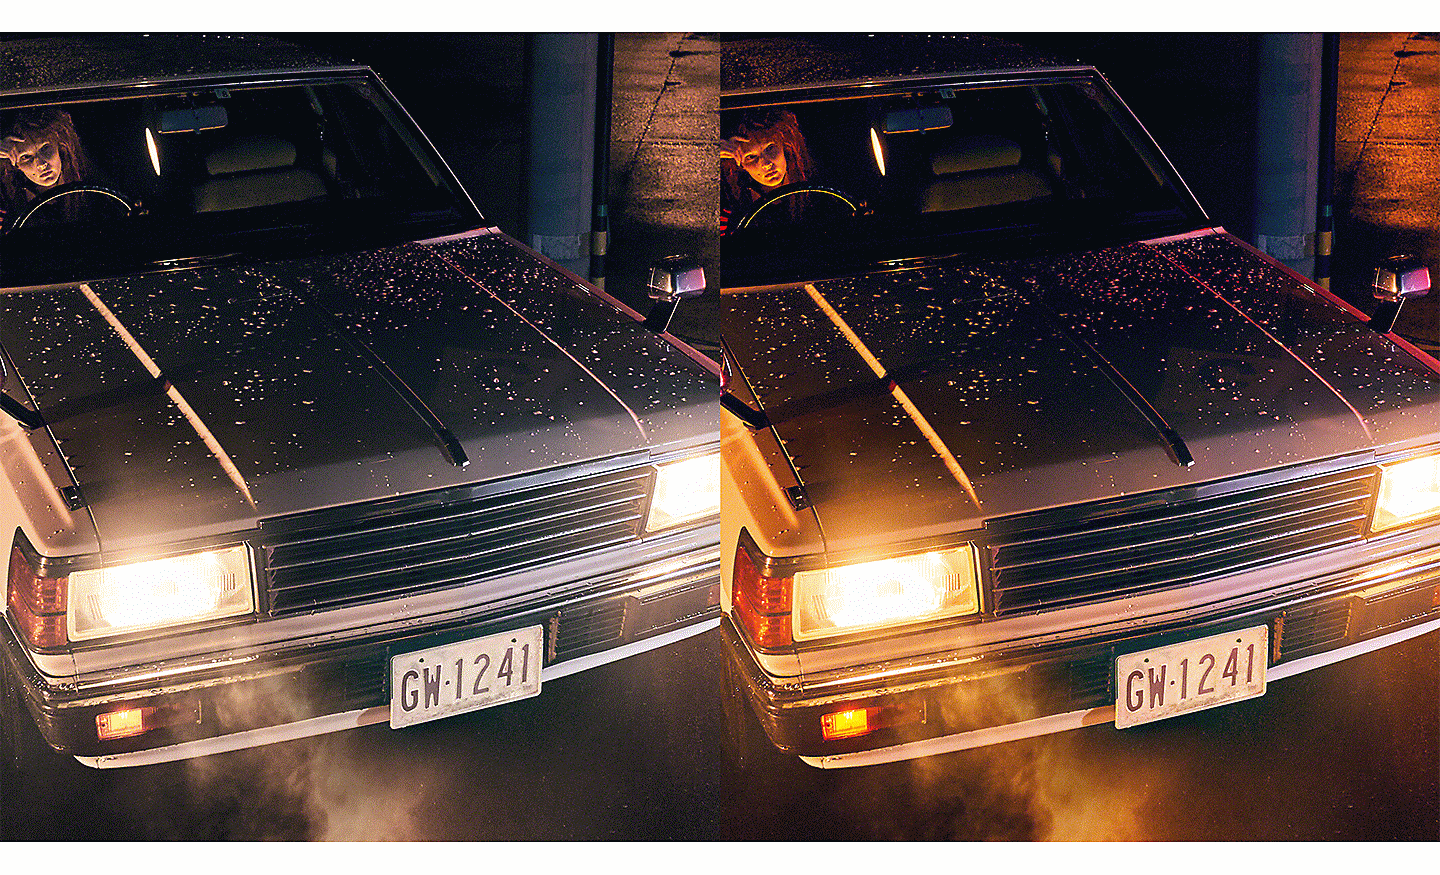 Dva snímky automobilu s rozsvícenými předními světly, jeden má plynulejší gradaci barev než druhý.